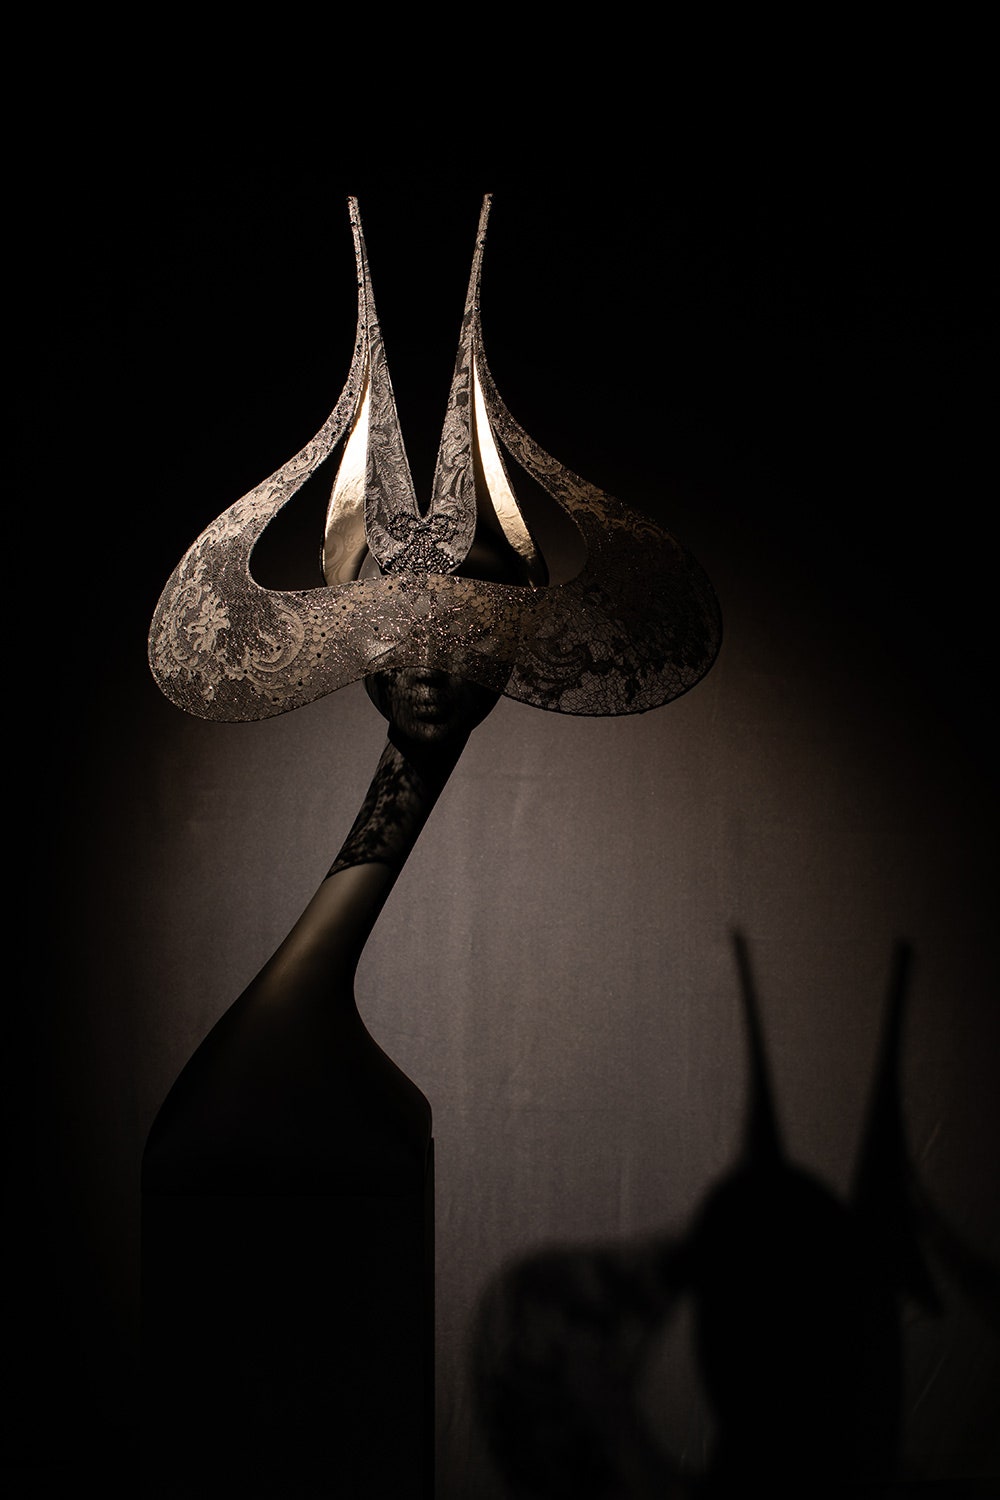 Шляпа «Венецианское кружевное крыло» из кутюрной коллекции весналето 2001. Демонстрировалась Изабеллой Блоу